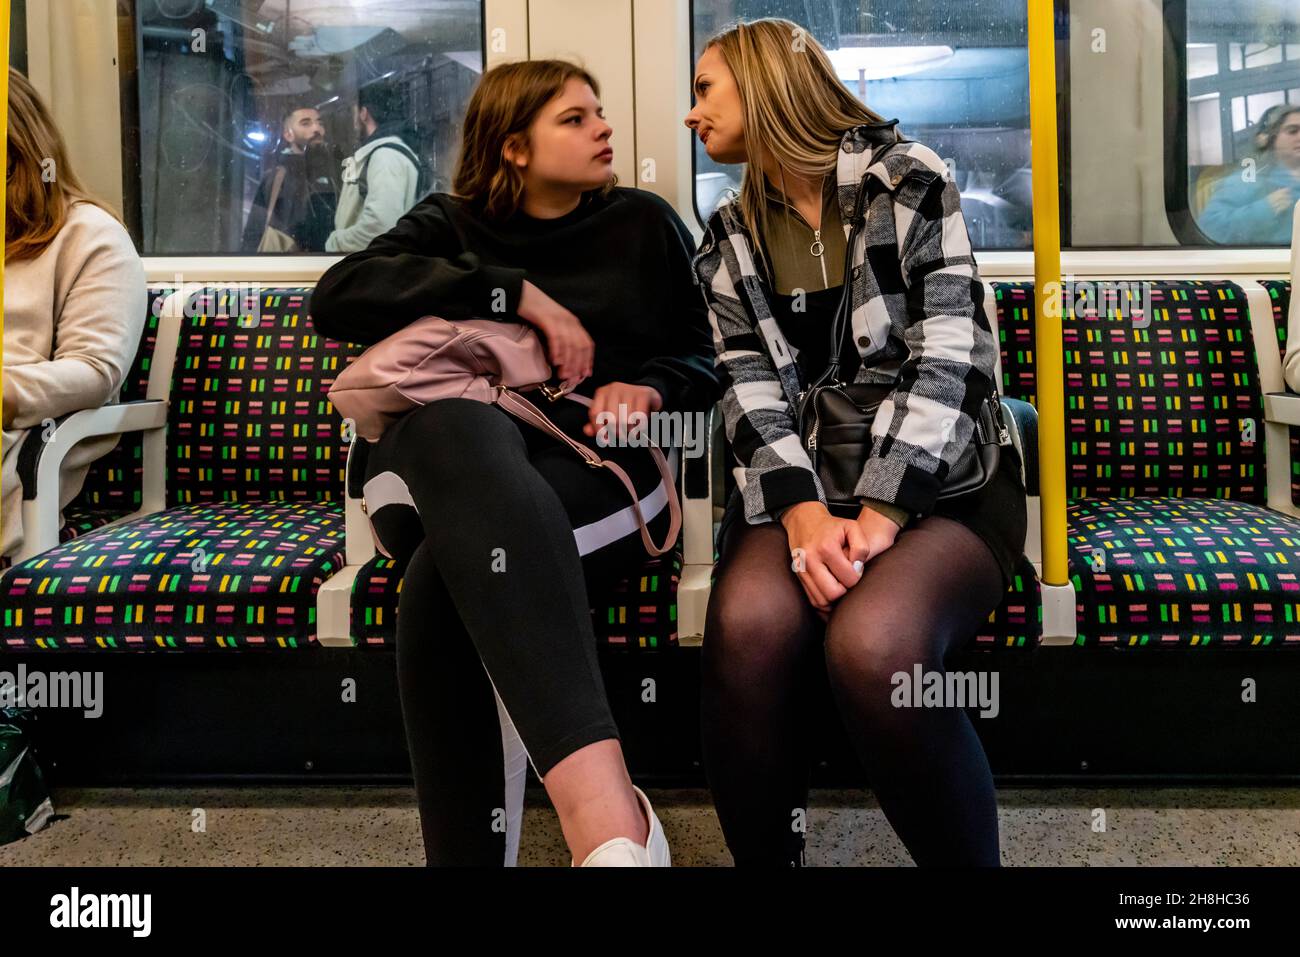 Zwei junge Frauen auf der Londoner U-Bahn, London, Großbritannien. Stockfoto